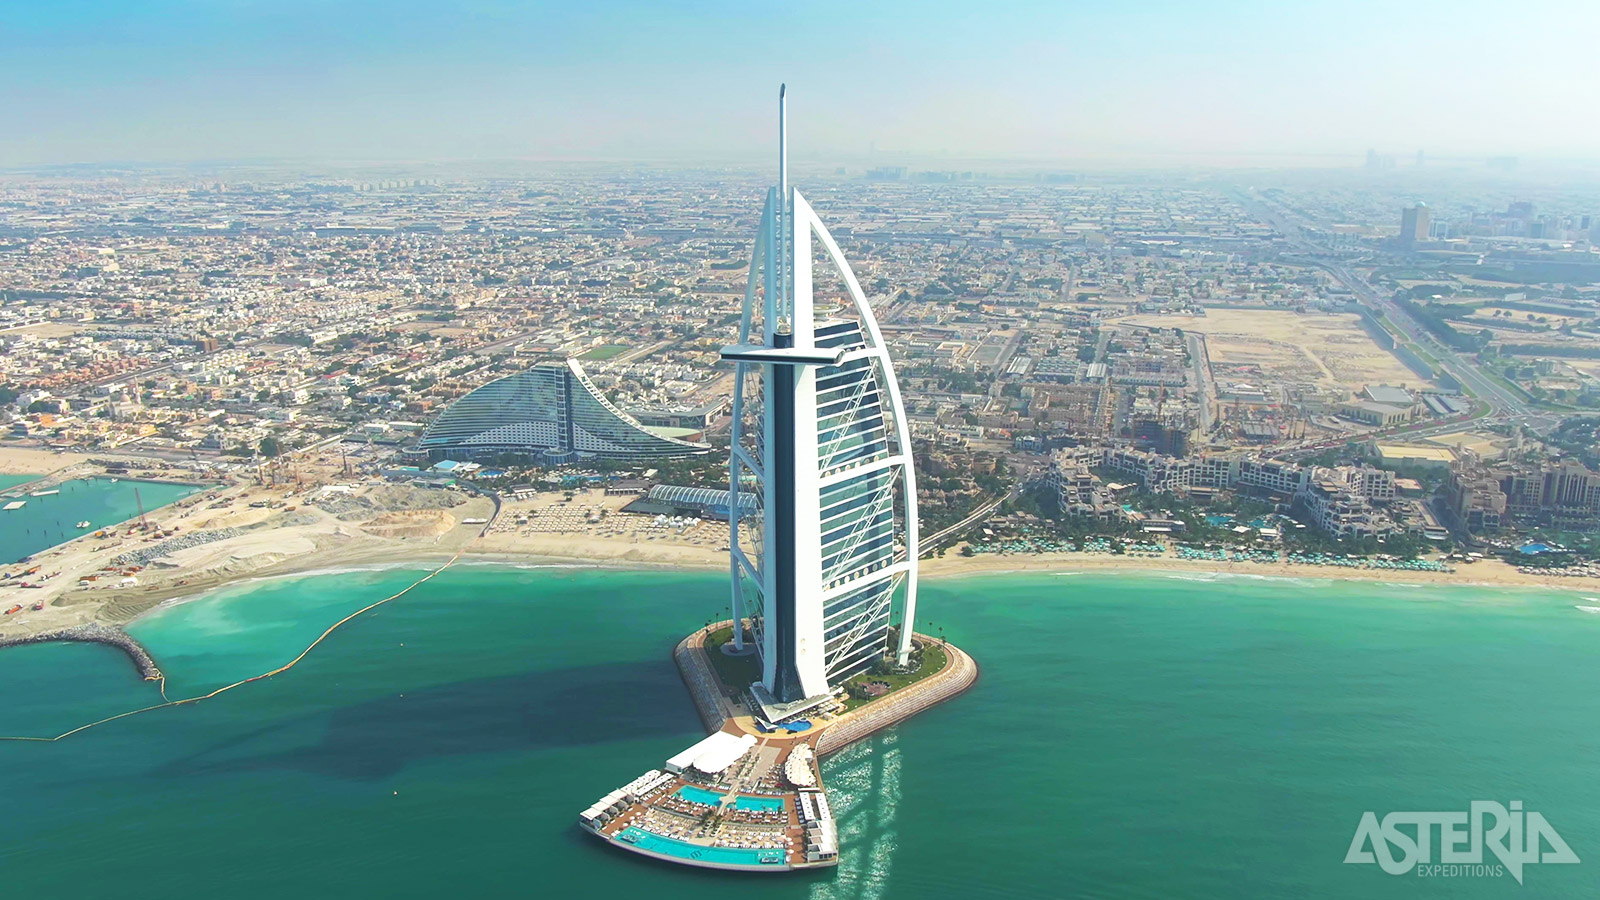 Het 321m hoge Burj Al Arab In Dubai staat bekend als het enige *******hotel ter wereld